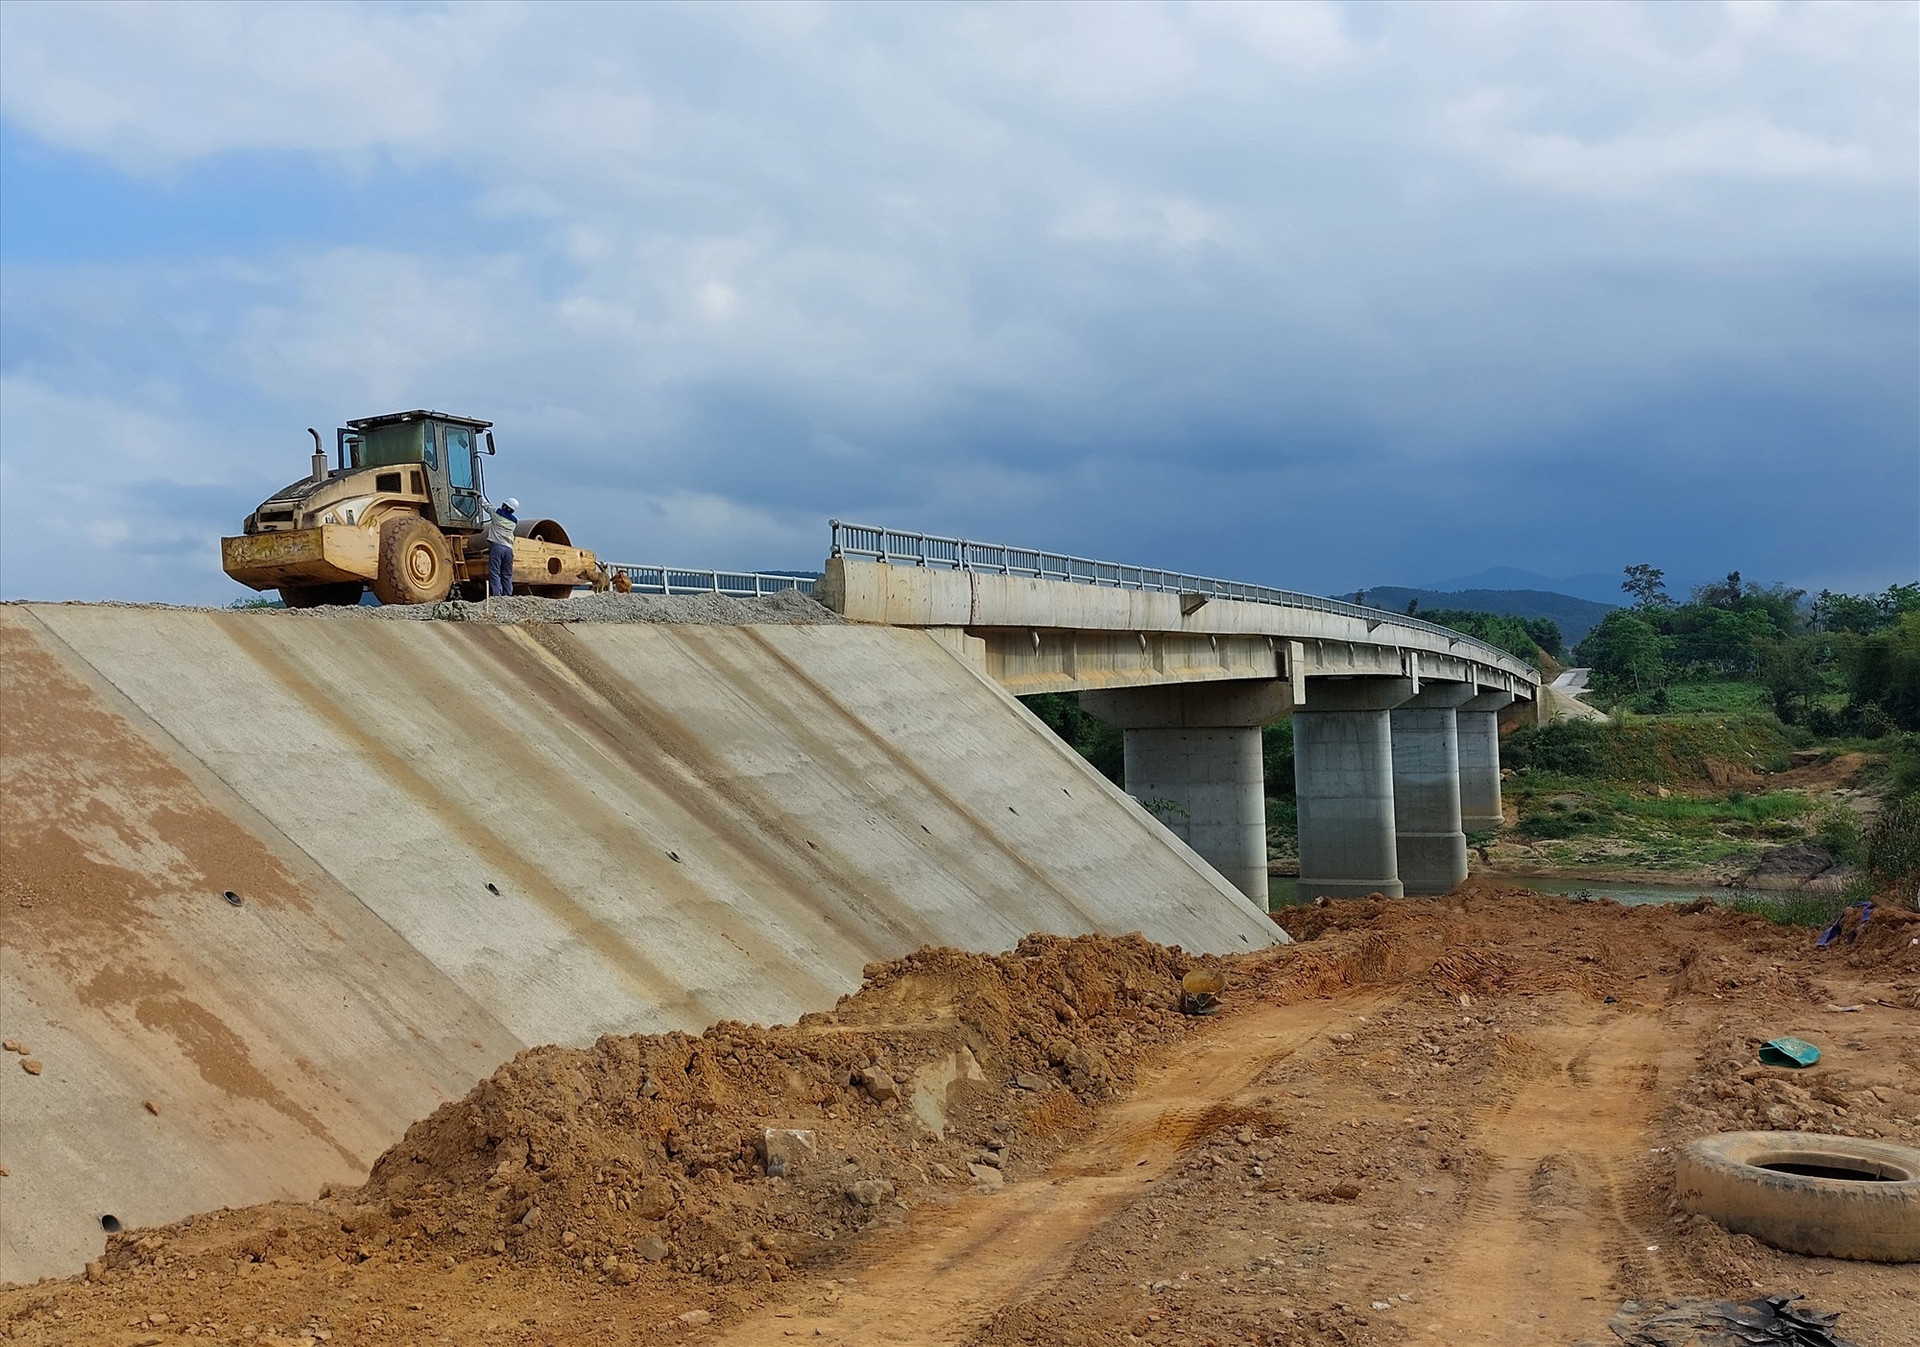 Huyện Hiệp Đức đang khẩn trương hoàn thành các công trình, phần việc chào mừng kỷ niệm 50 năm giải phóng huyện. Trong ảnh, công trình cầu Sông Khang đang thi công hoàn thiện. Ảnh: V.M